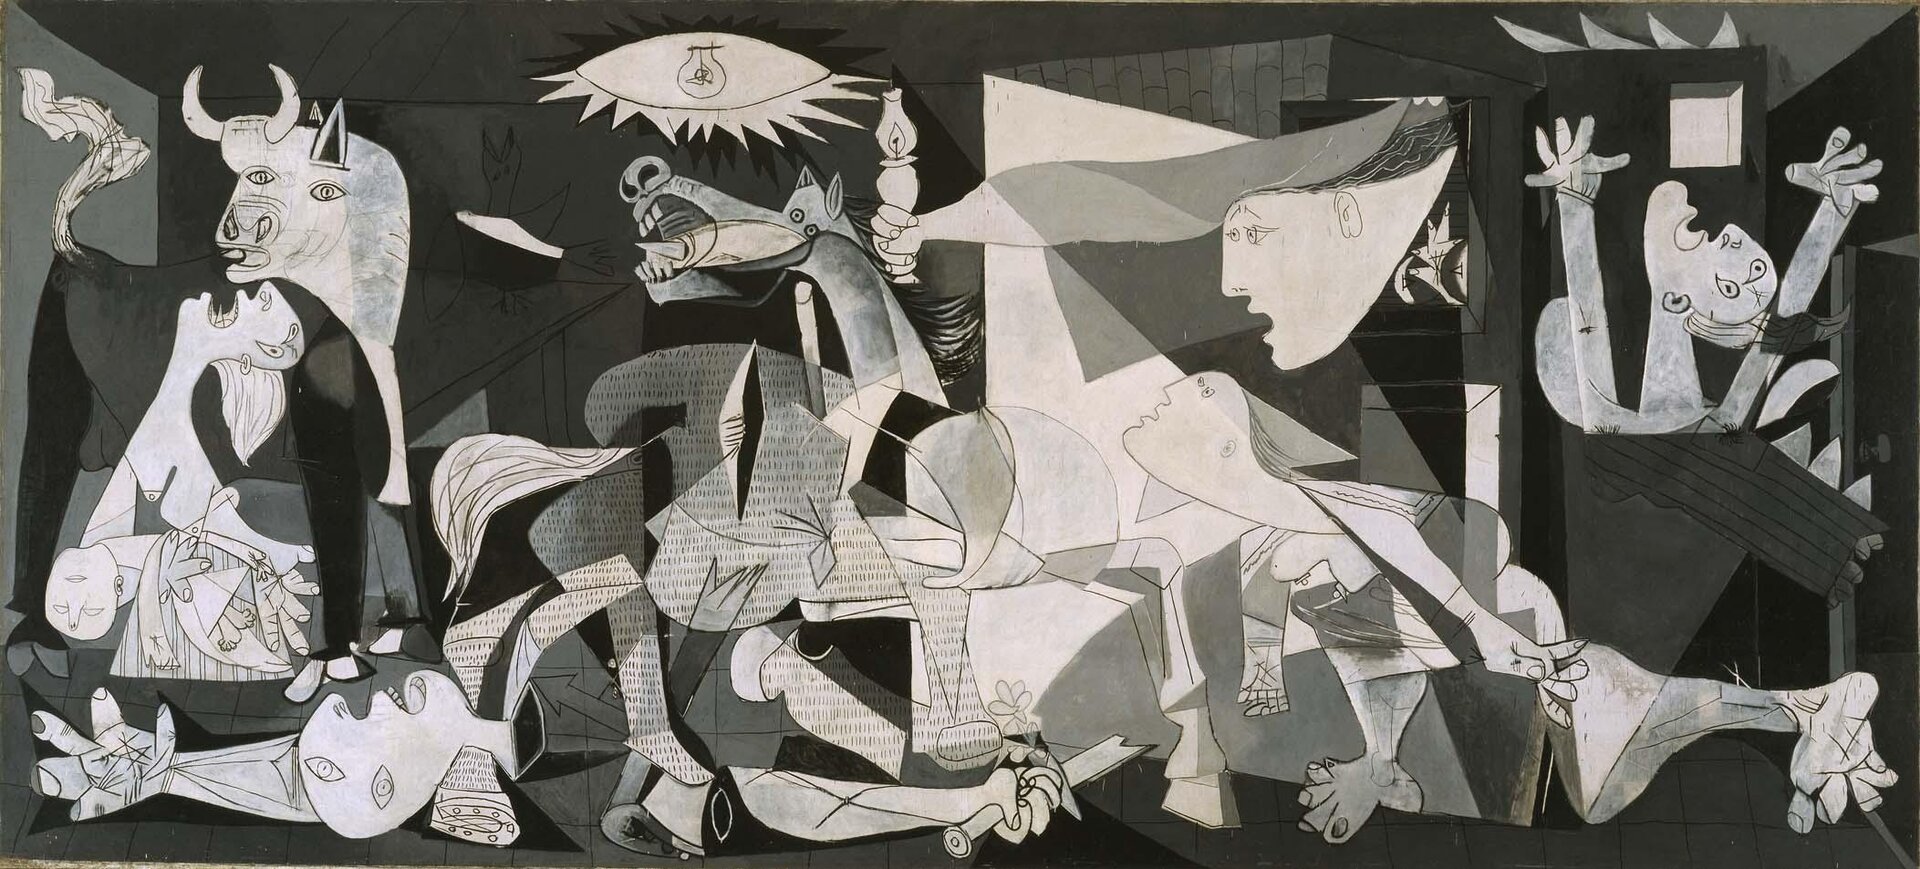 Ilustracja przedstawia obraz Pablo Picasso „Guernica”. Obraz jest czarno-biały i przedstawia widok na ofiary bombardowania miasta Guernica. Ludzie jak i zwierzęta sprawiają wrażenie przerażonych, widoczny jest ból w oczach. Po lewej stronie obrazu widoczna jest matka z zabitym dzieckiem. W dolnej części obrazu widoczne są zwłoki, oraz cierpiące zwierzęta.